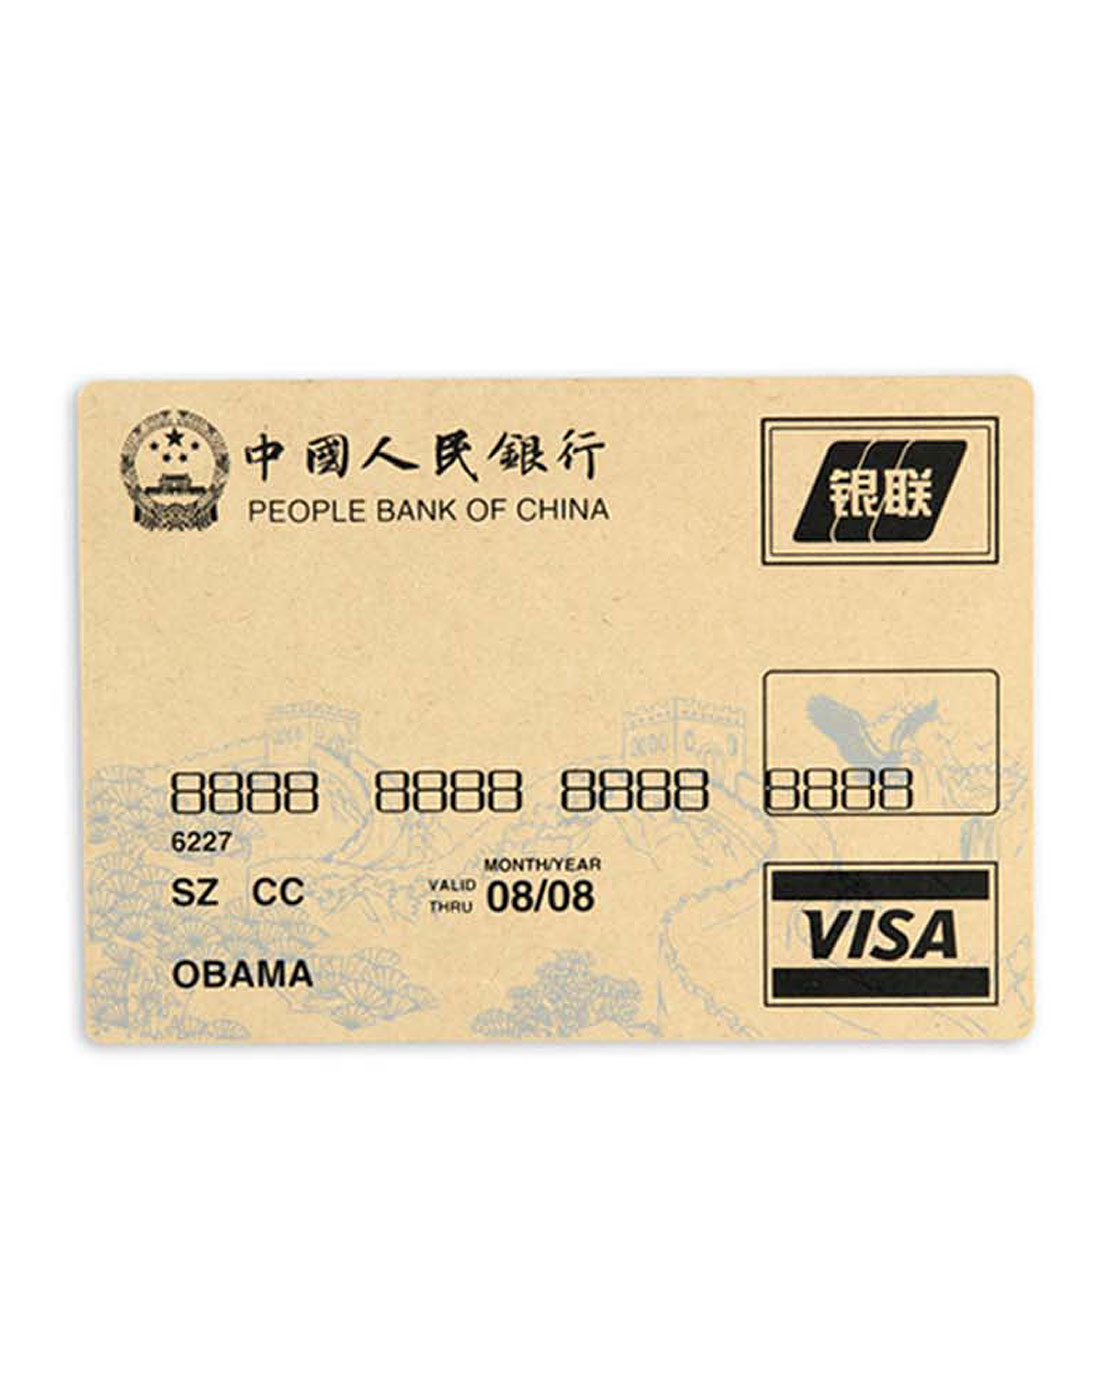 中国人民银行卡-鼠标垫-中号